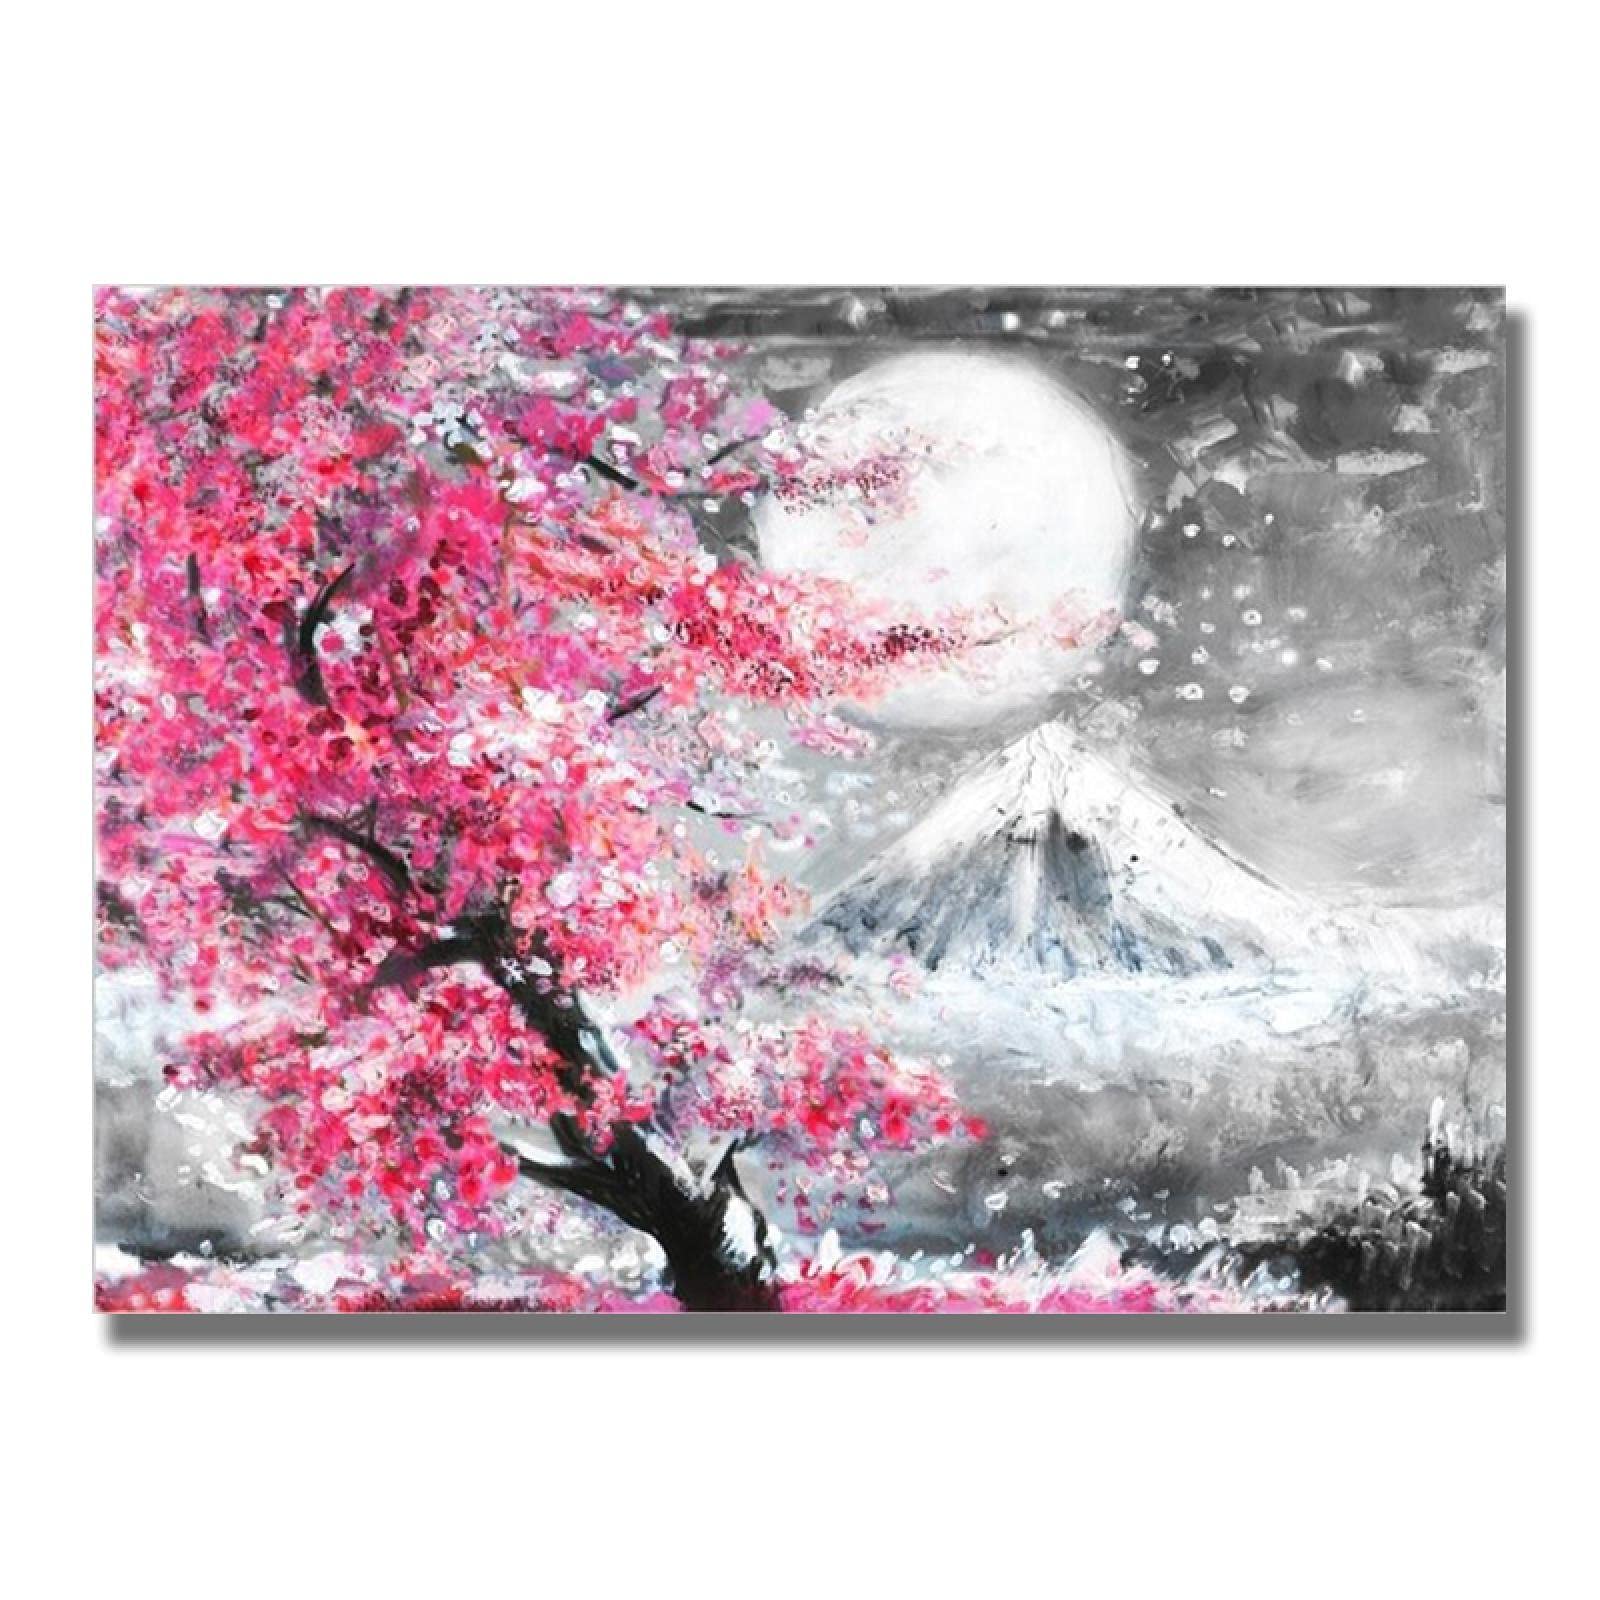 Mount Cherry Blossom Landscape Japan Leinwand Malerei Poster und Drucke Wandkunst Bild für Wohnzimmer Deoration 70x100cm rahmenlos